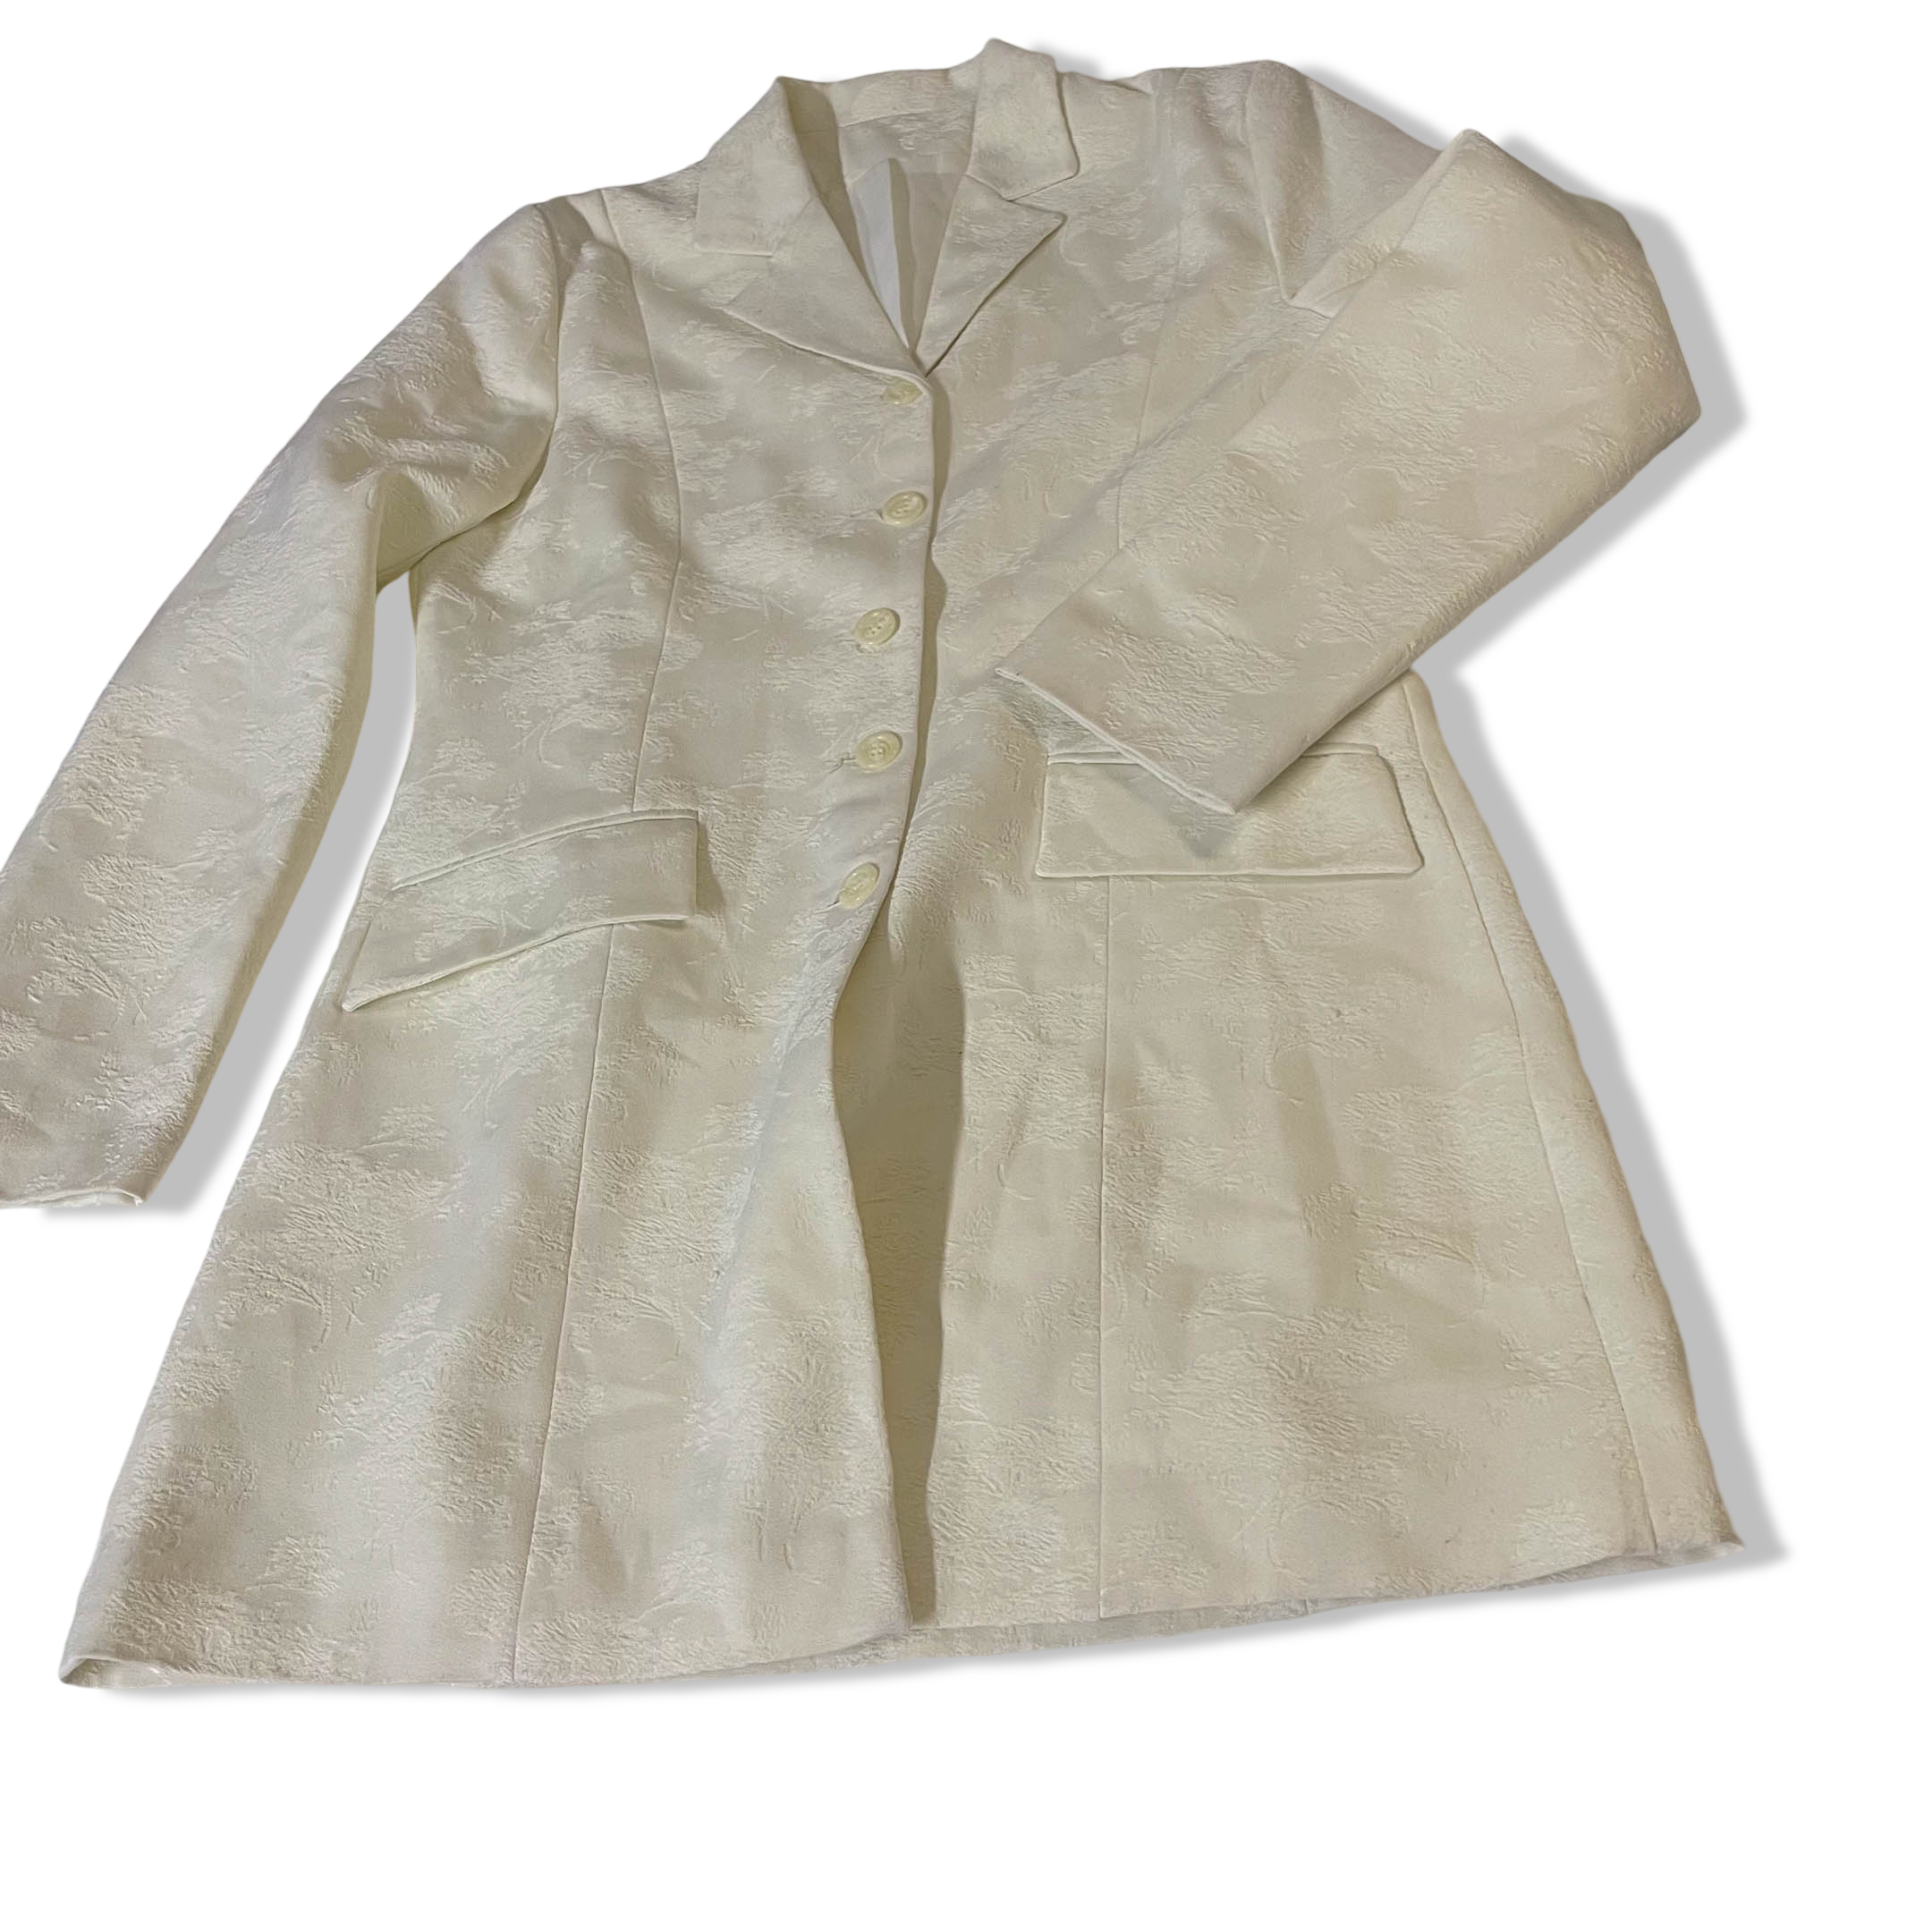 Vintage Women's white coat in S/M| L35 W20| SKU 3797